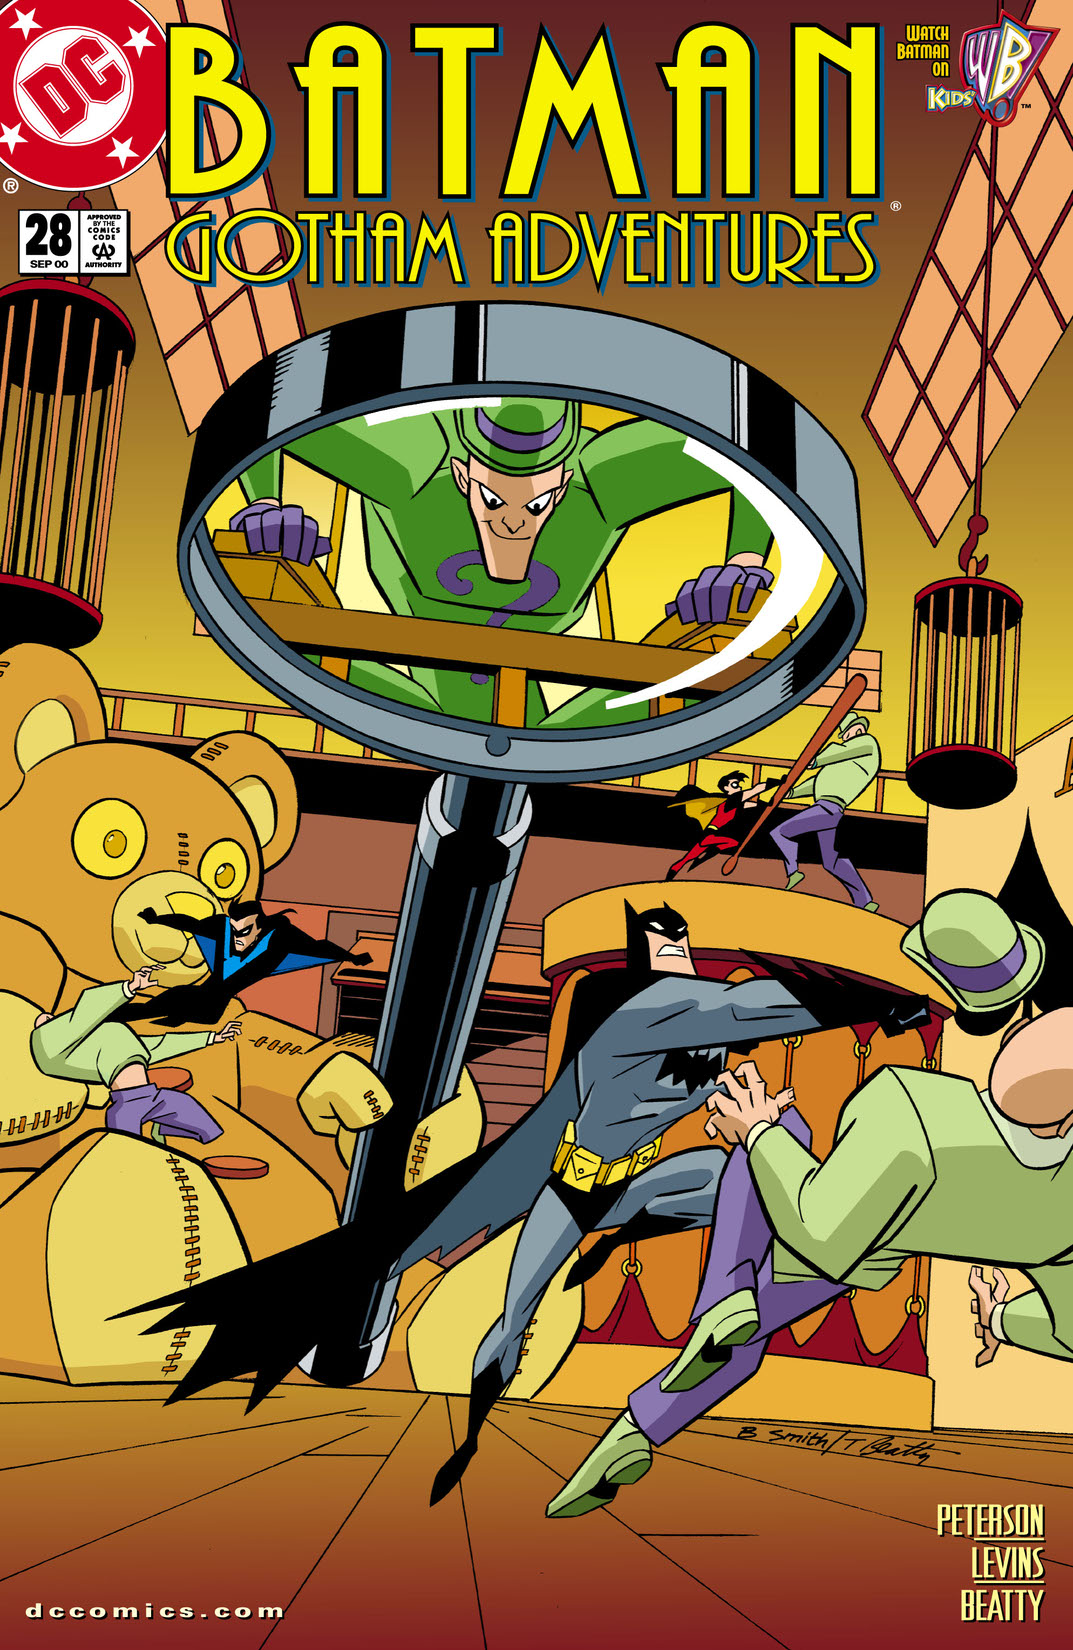 Batman: Gotham Adventures #28 preview images